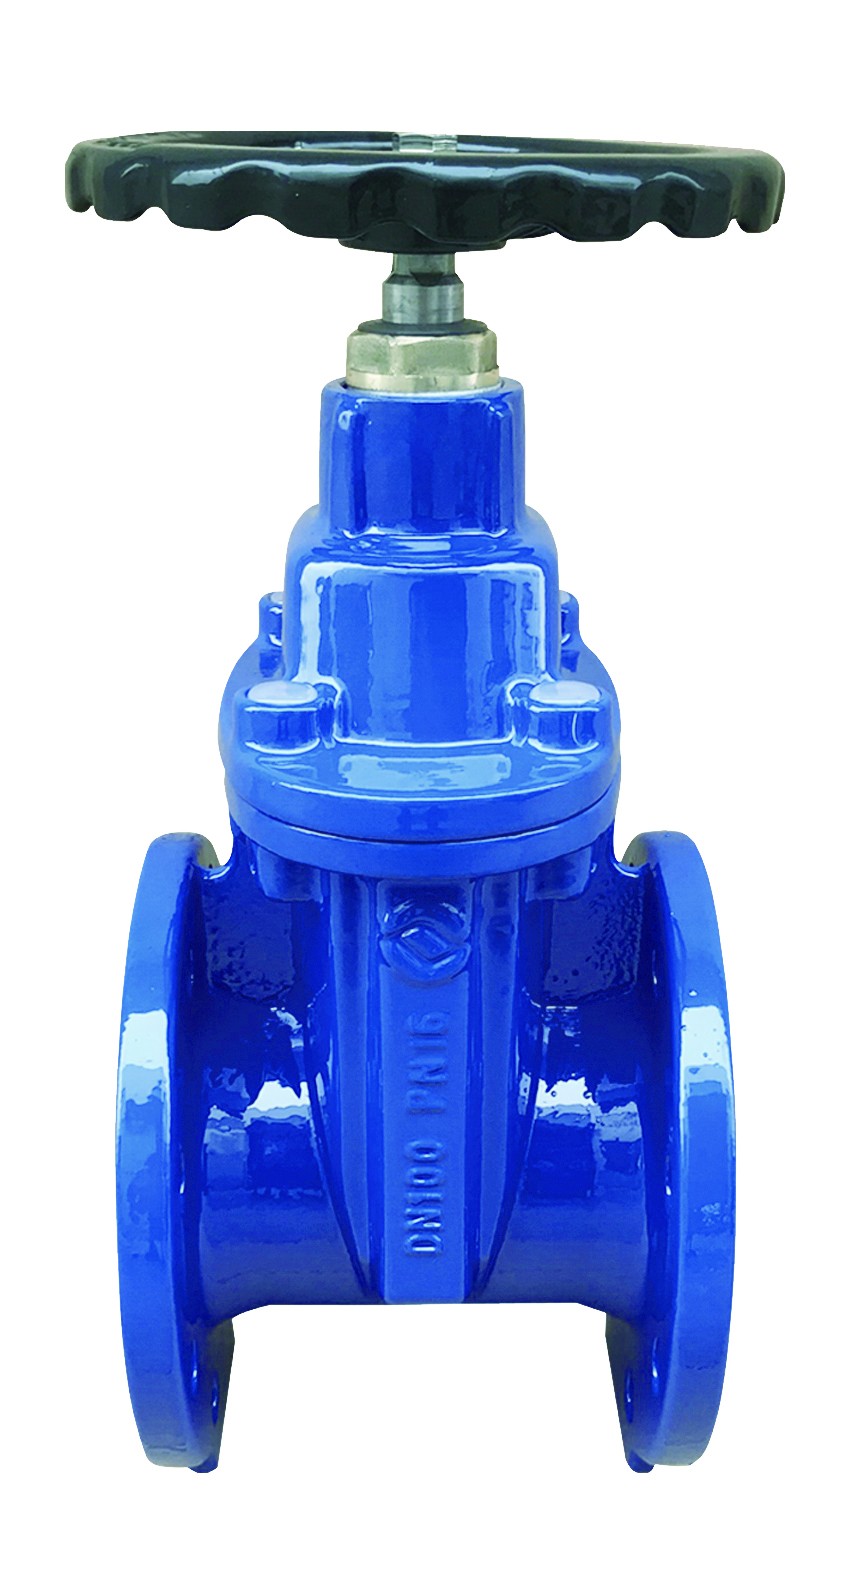 Rexroth S8A2.0 check valve